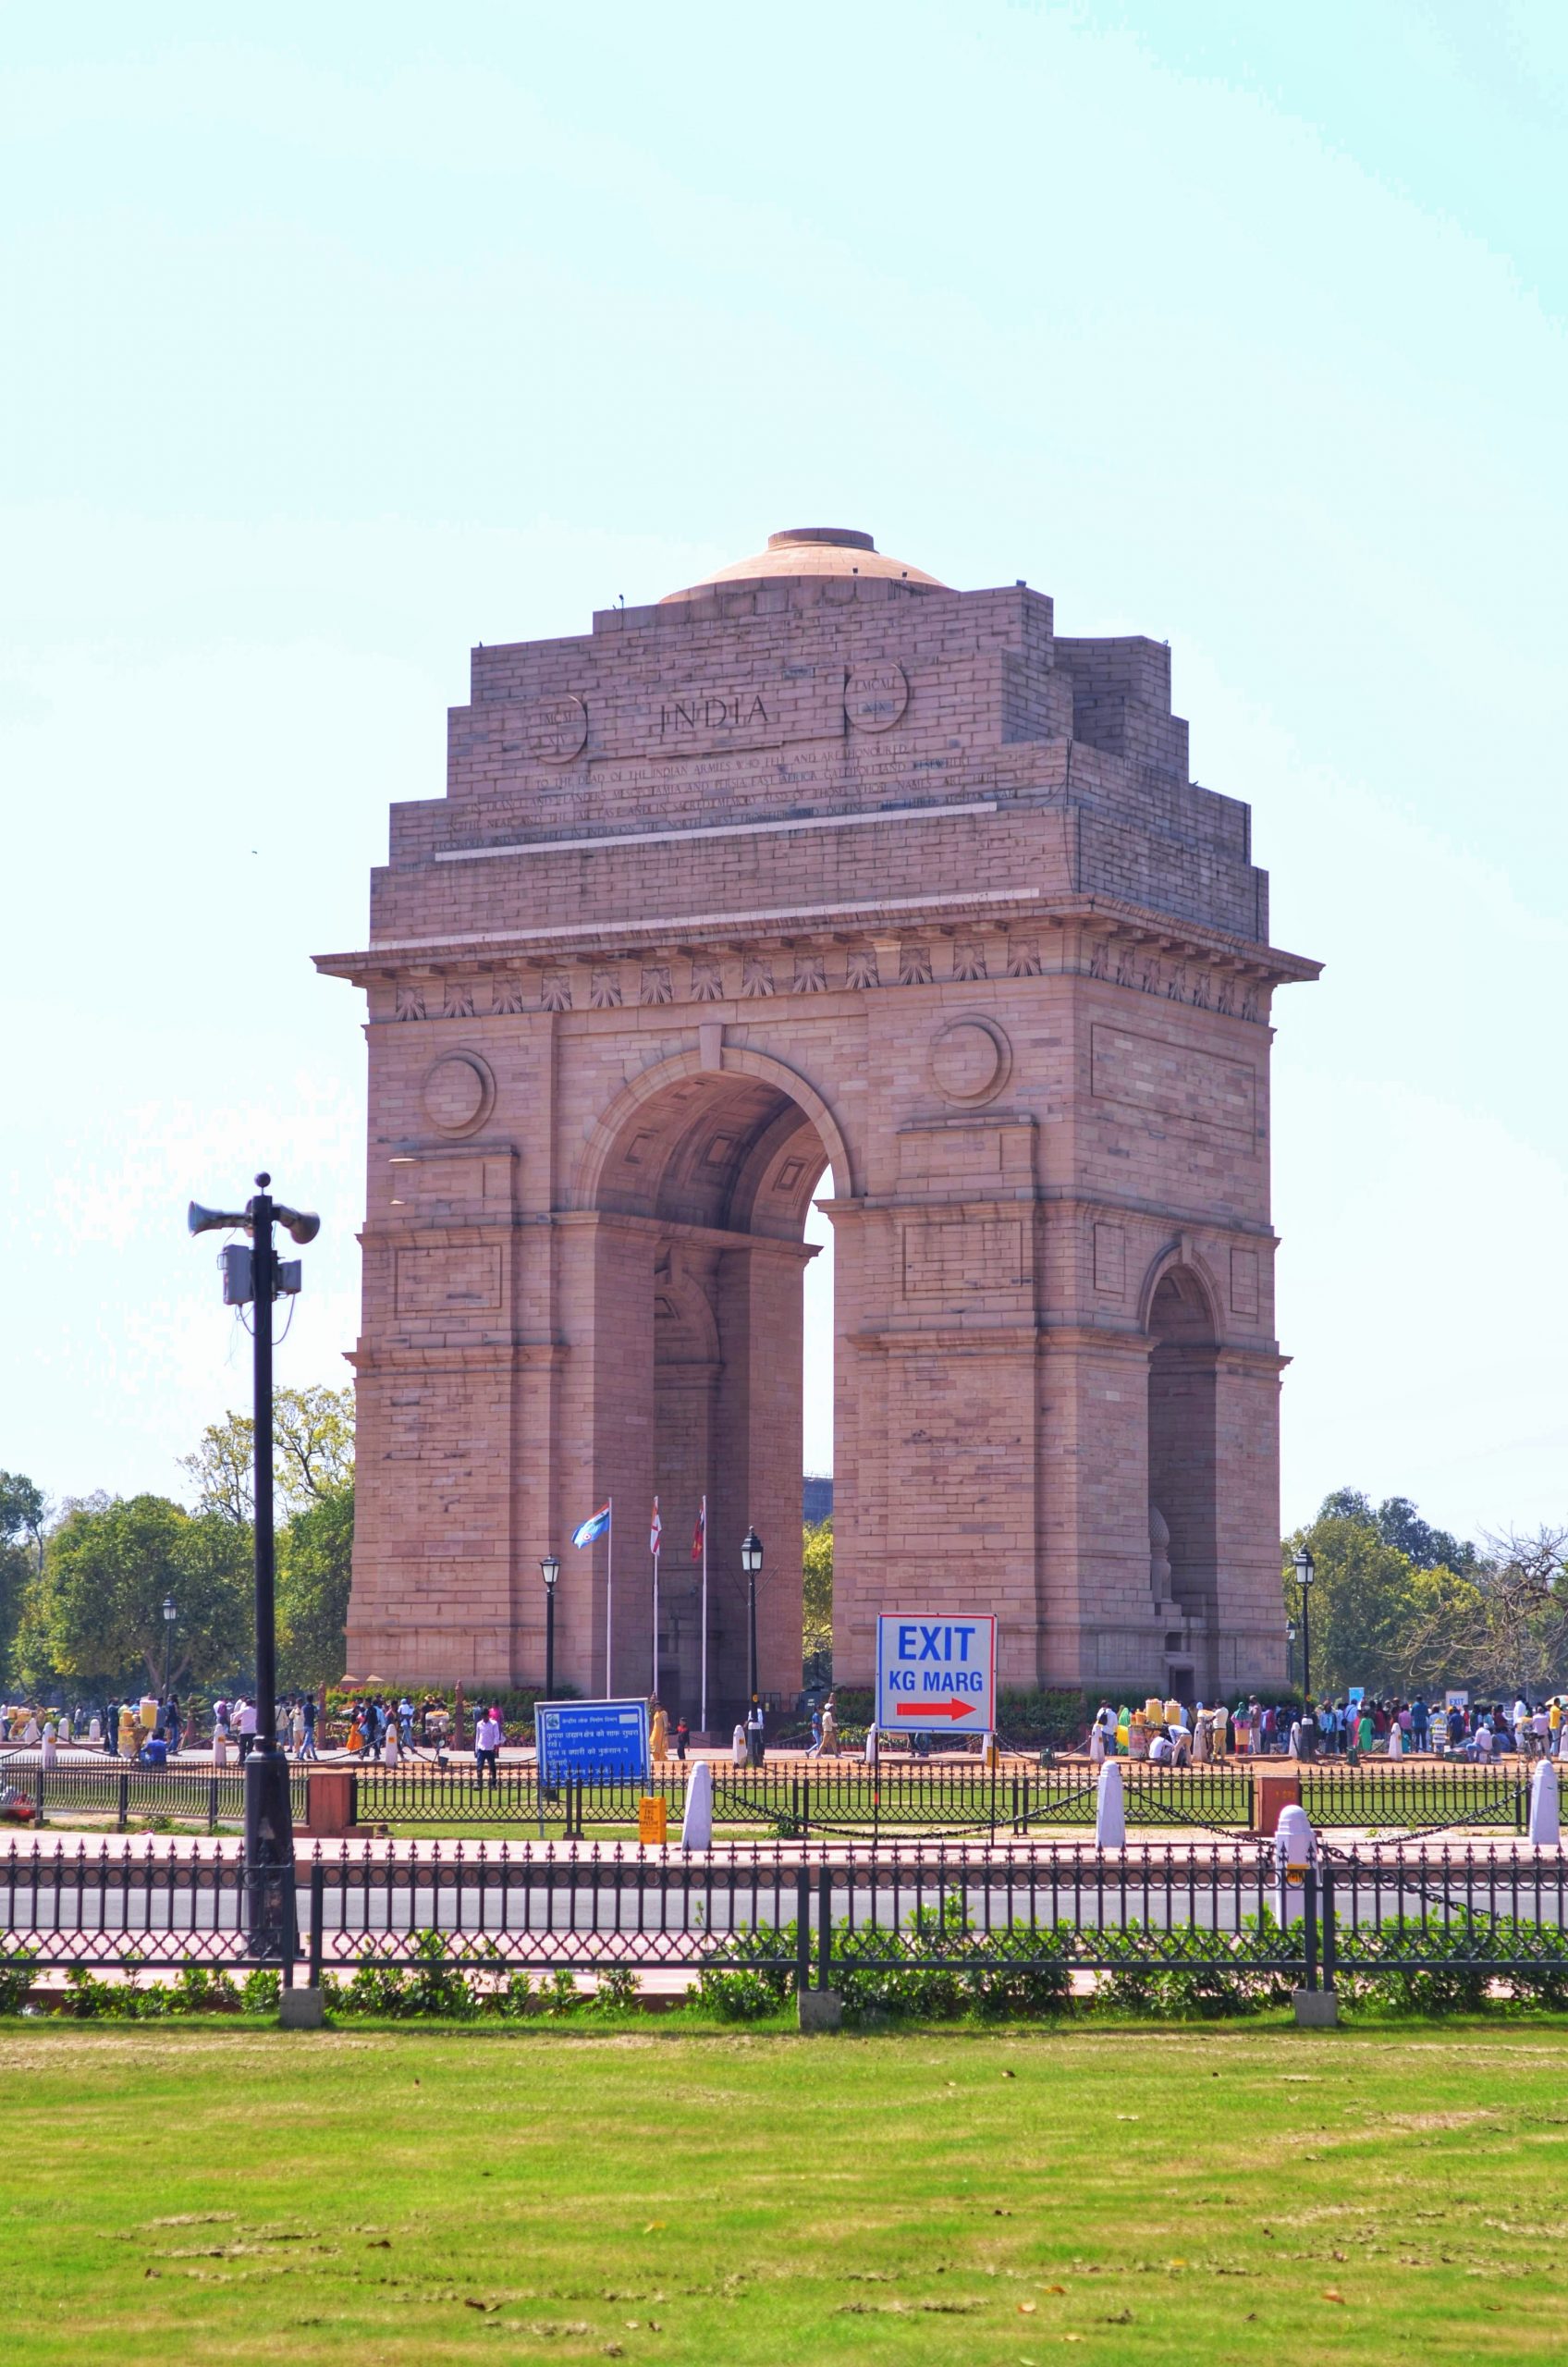 India gate monument